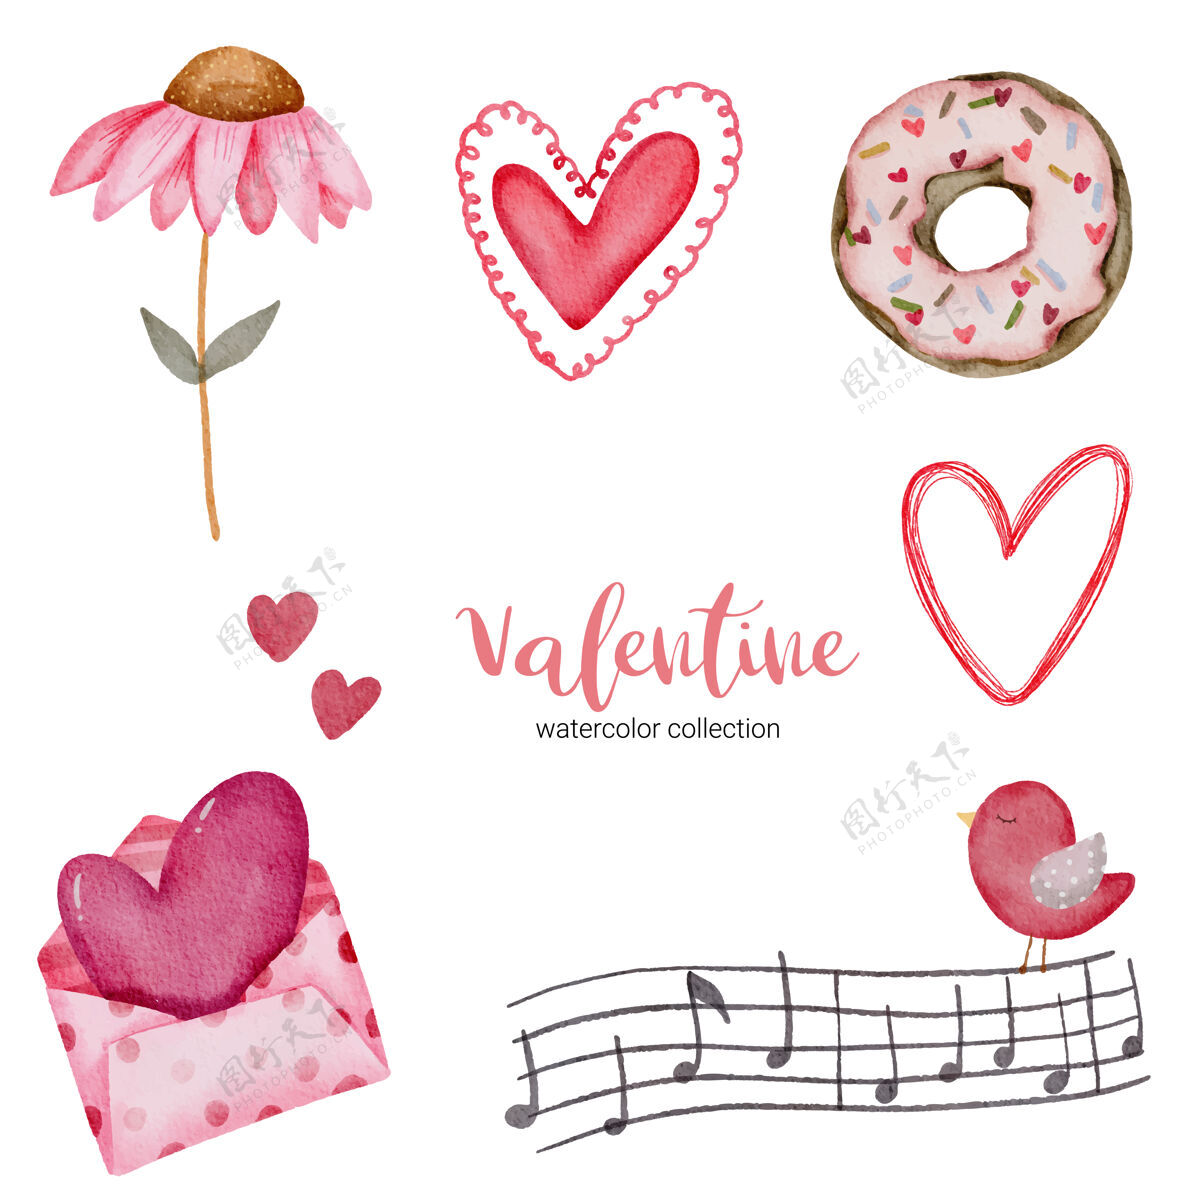 浪漫情人节套装元素信封 向日葵 甜甜圈 礼品等情人节设置水彩